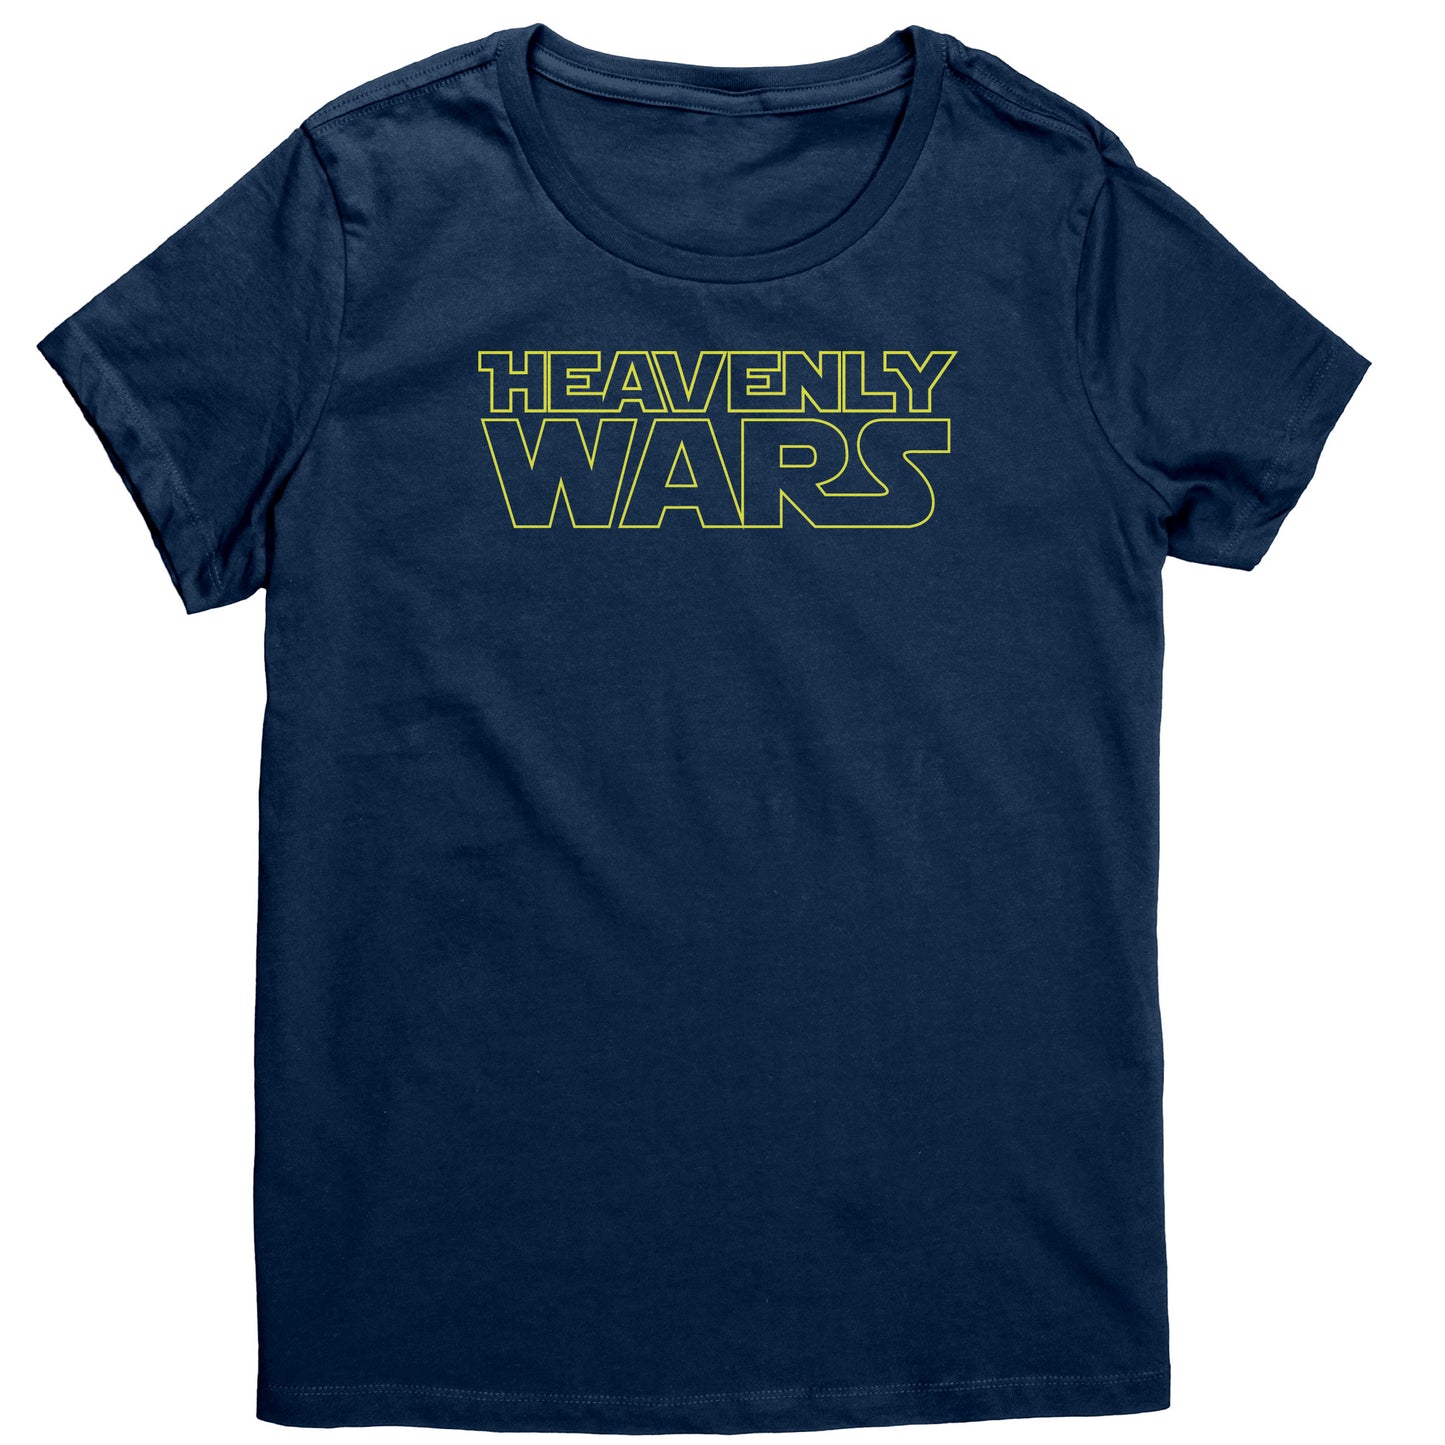 Heavenly Wars Women's T-Shirt